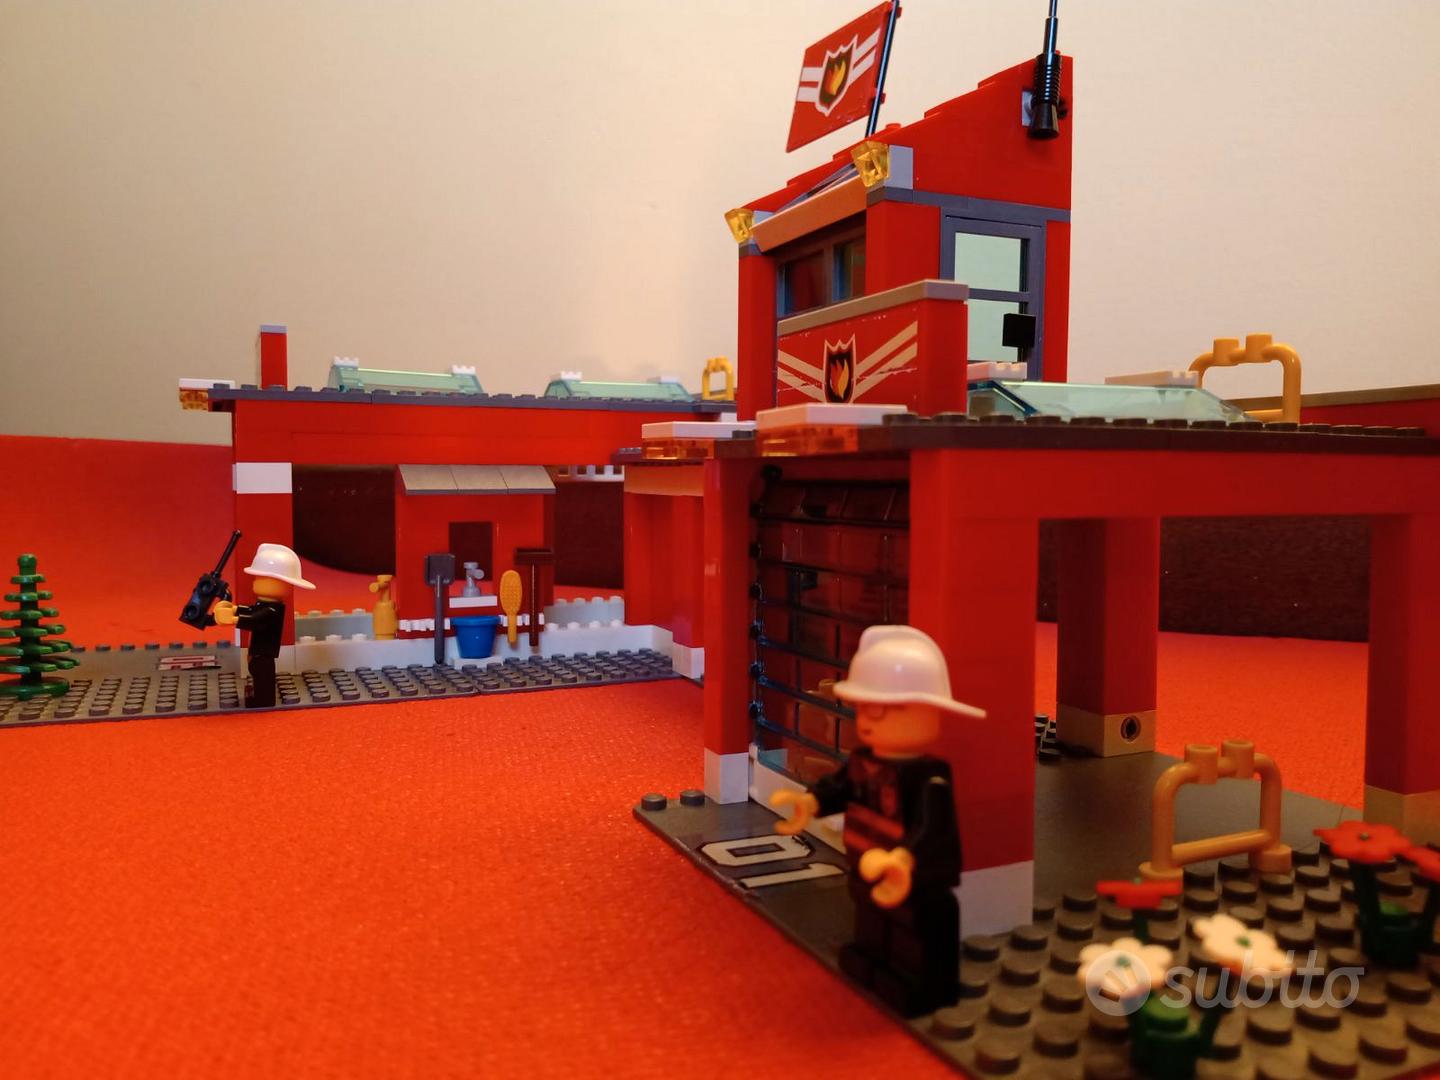 Lego originale: base pompieri, camion e auto - Tutto per i bambini